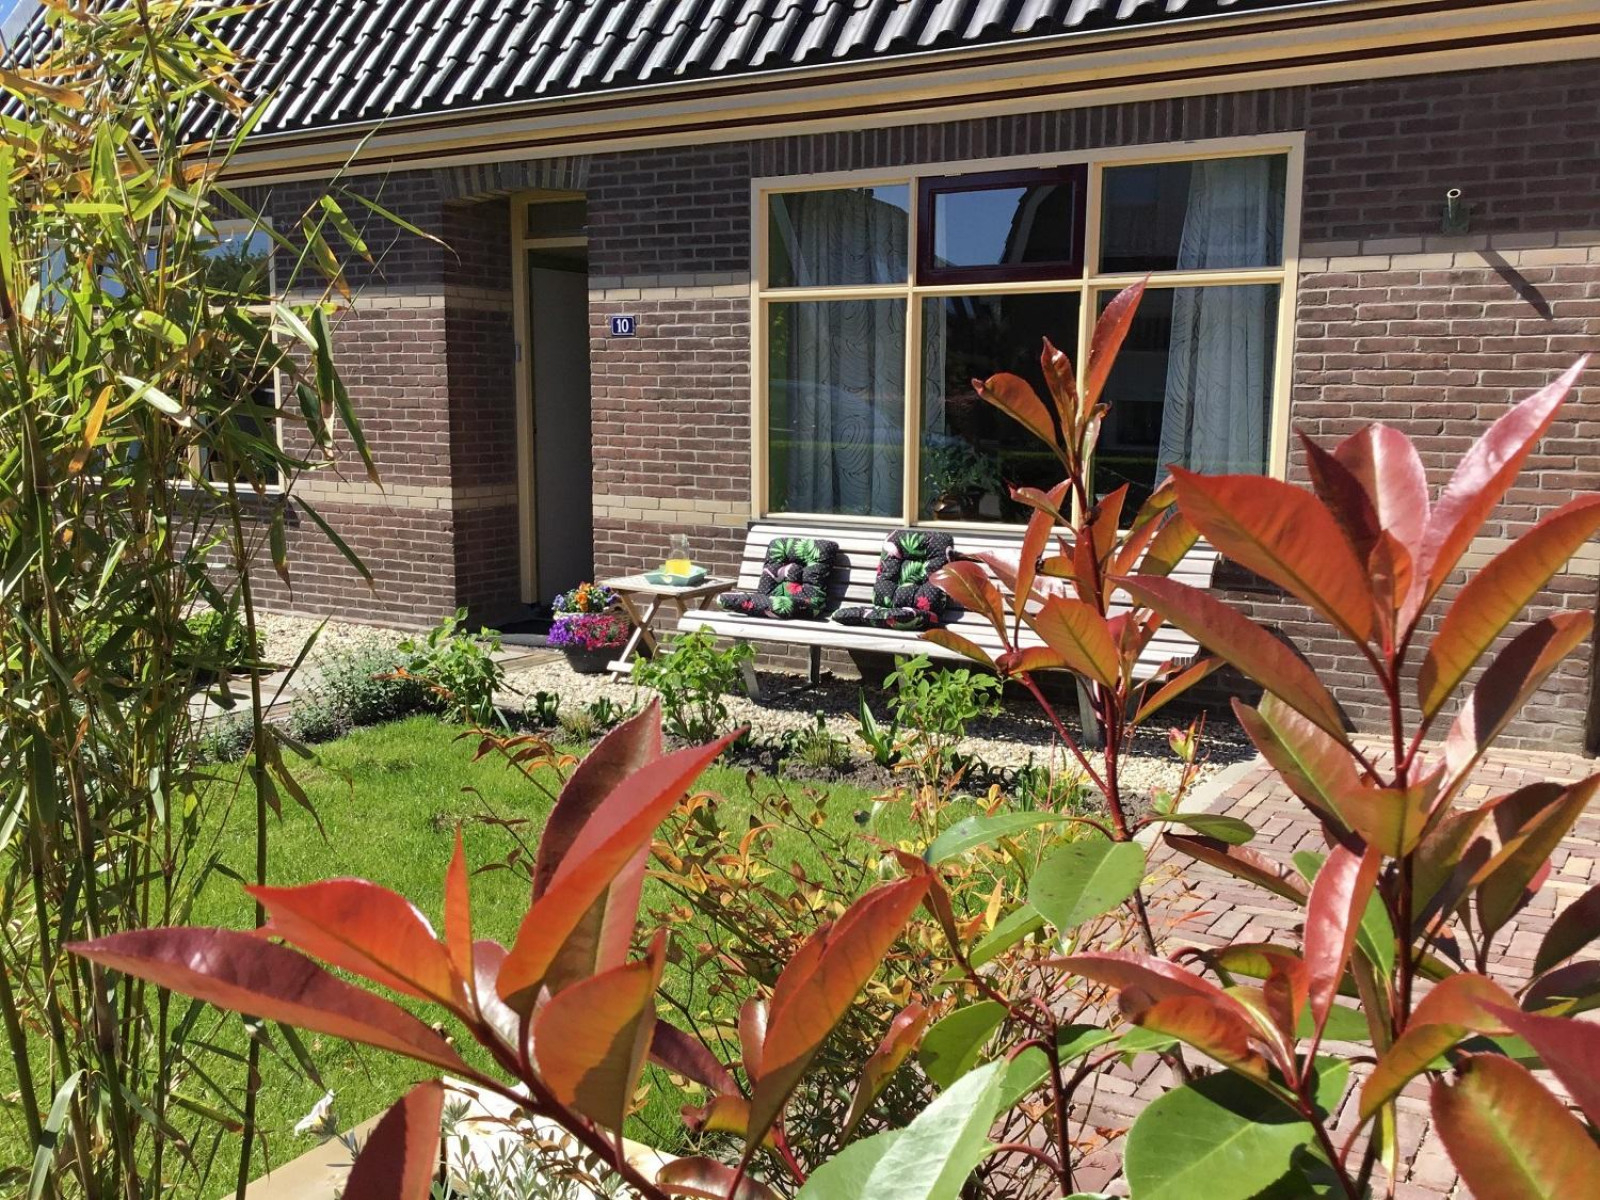 Knus 2 persoons vakantiehuis in het centrum van Warmenhuizen - Nederland - Europa - Warmenhuizen